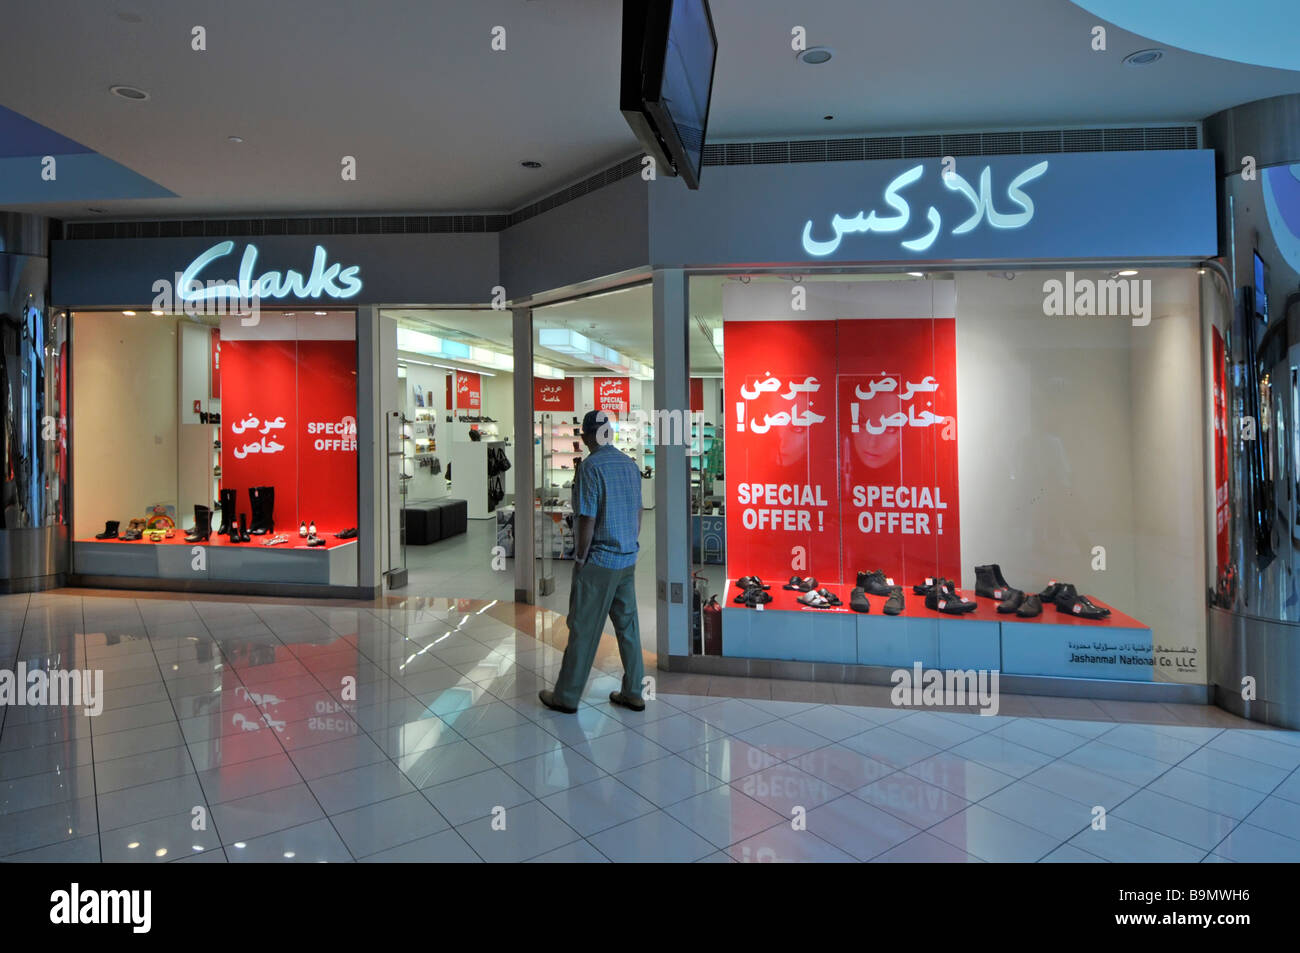 clarks shoes ibn battuta mall